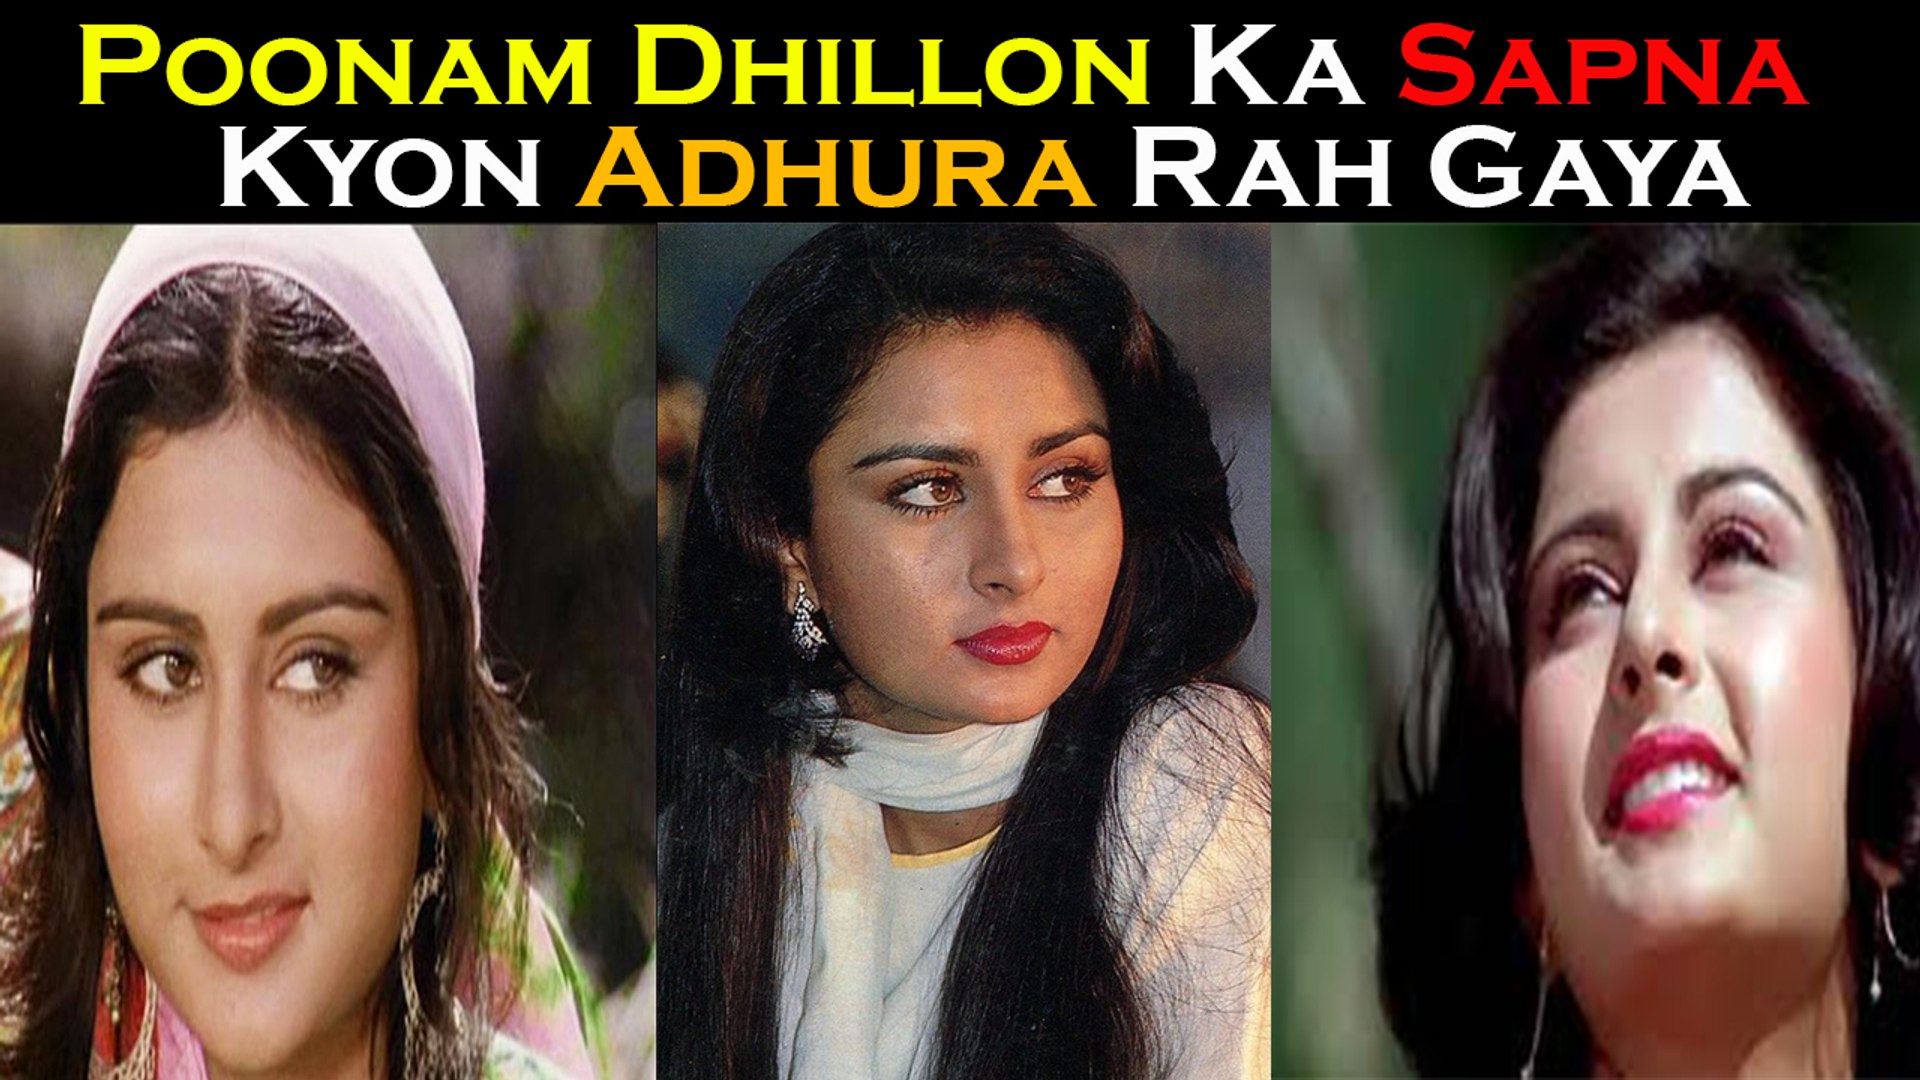 Poonam Dhillon Ka Sapna Kyon Adhura Rah Gaya - video Dailymotion